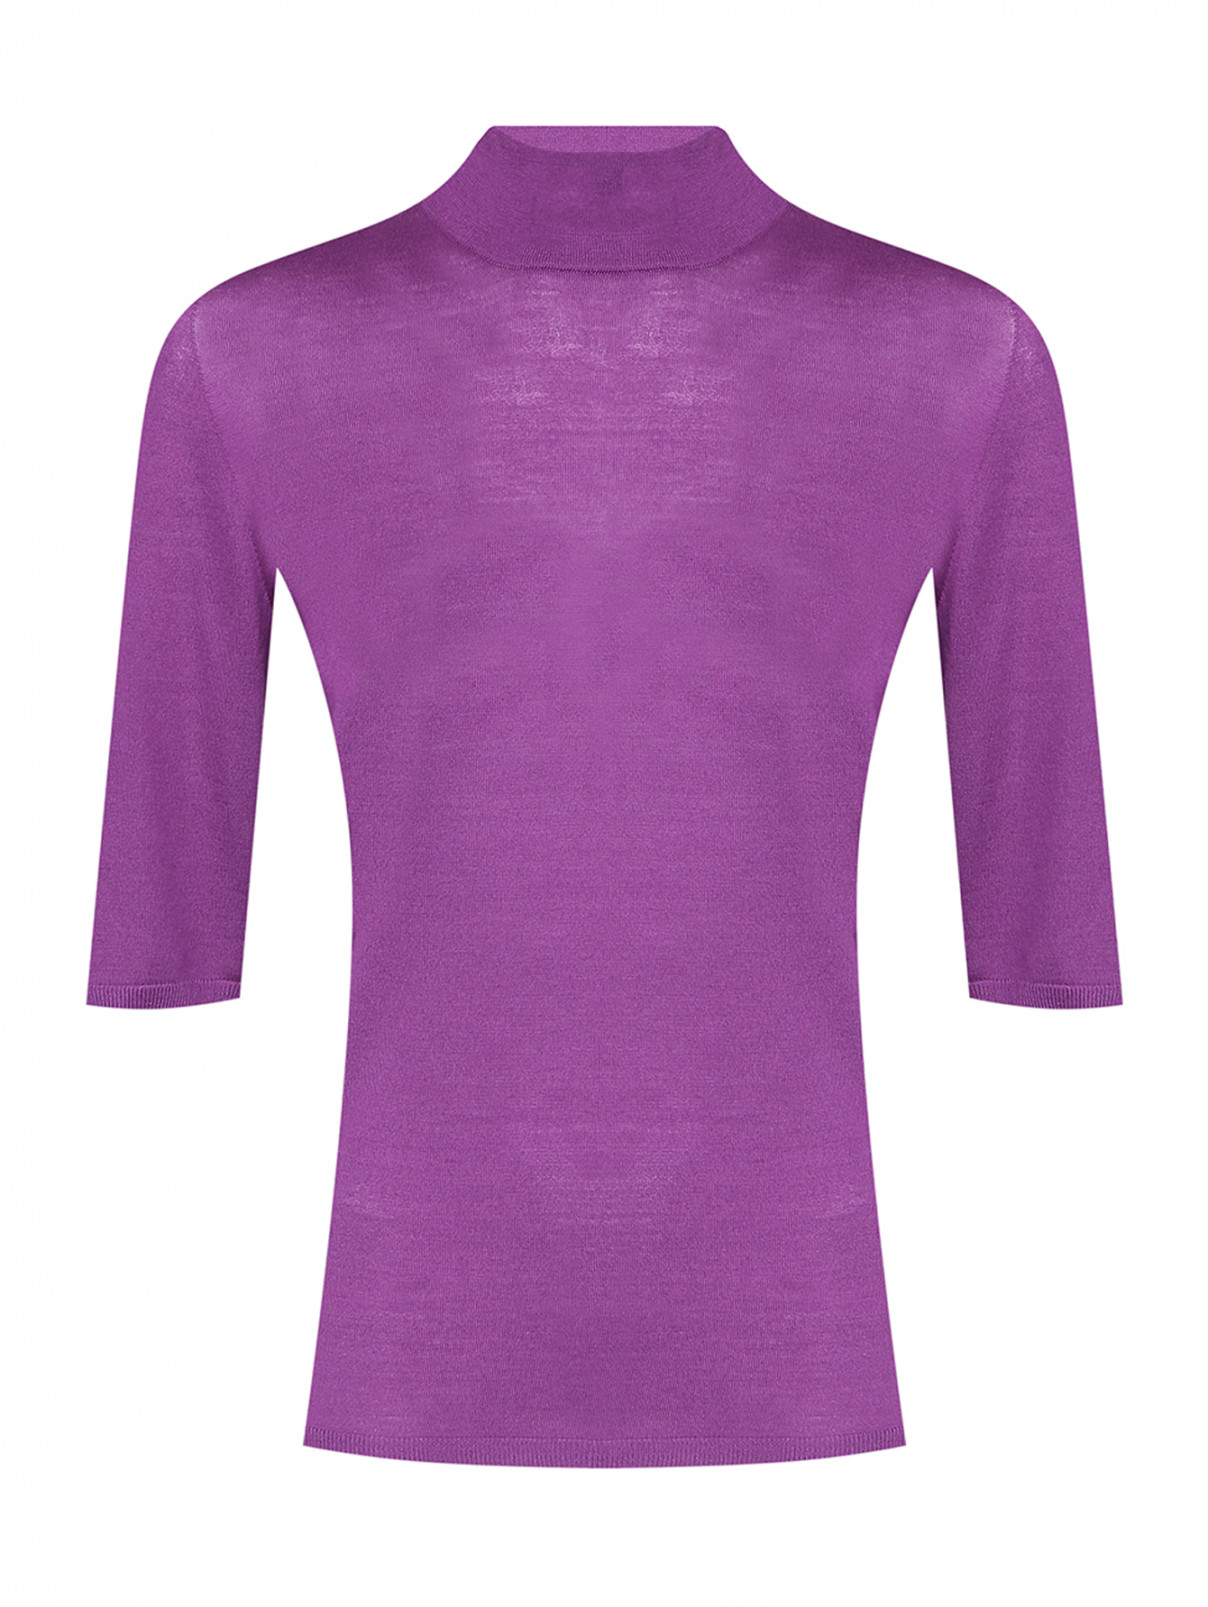 Водолазка из шерсти с коротким рукавом Max Mara  –  Общий вид  – Цвет:  Фиолетовый